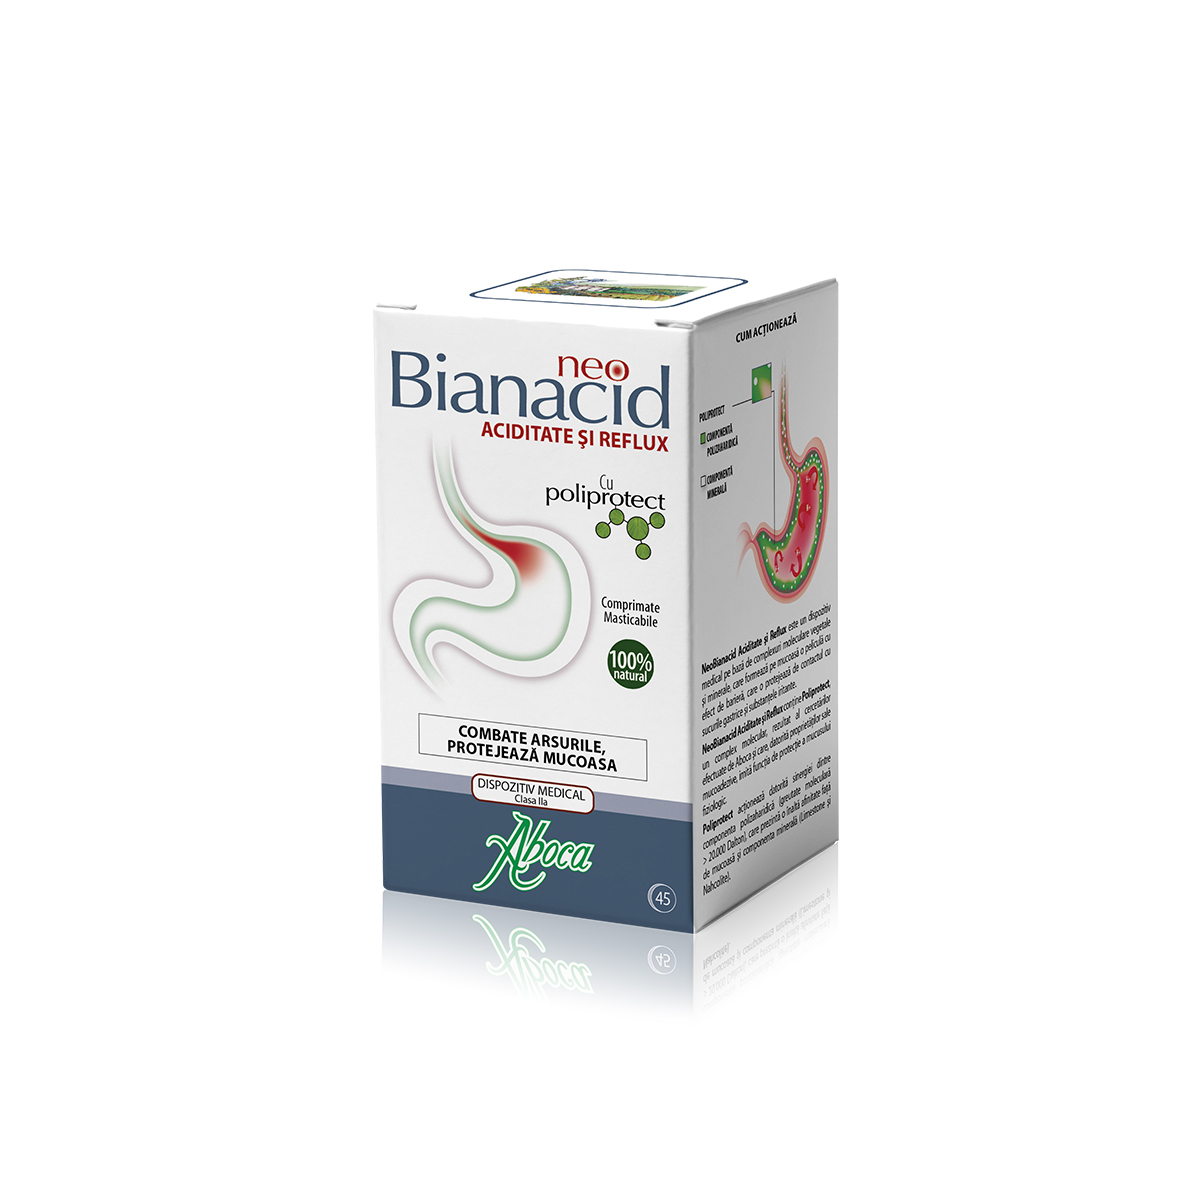 NeoBianacid cu poliprotect pentru aciditate și reflux, 45 comprimate